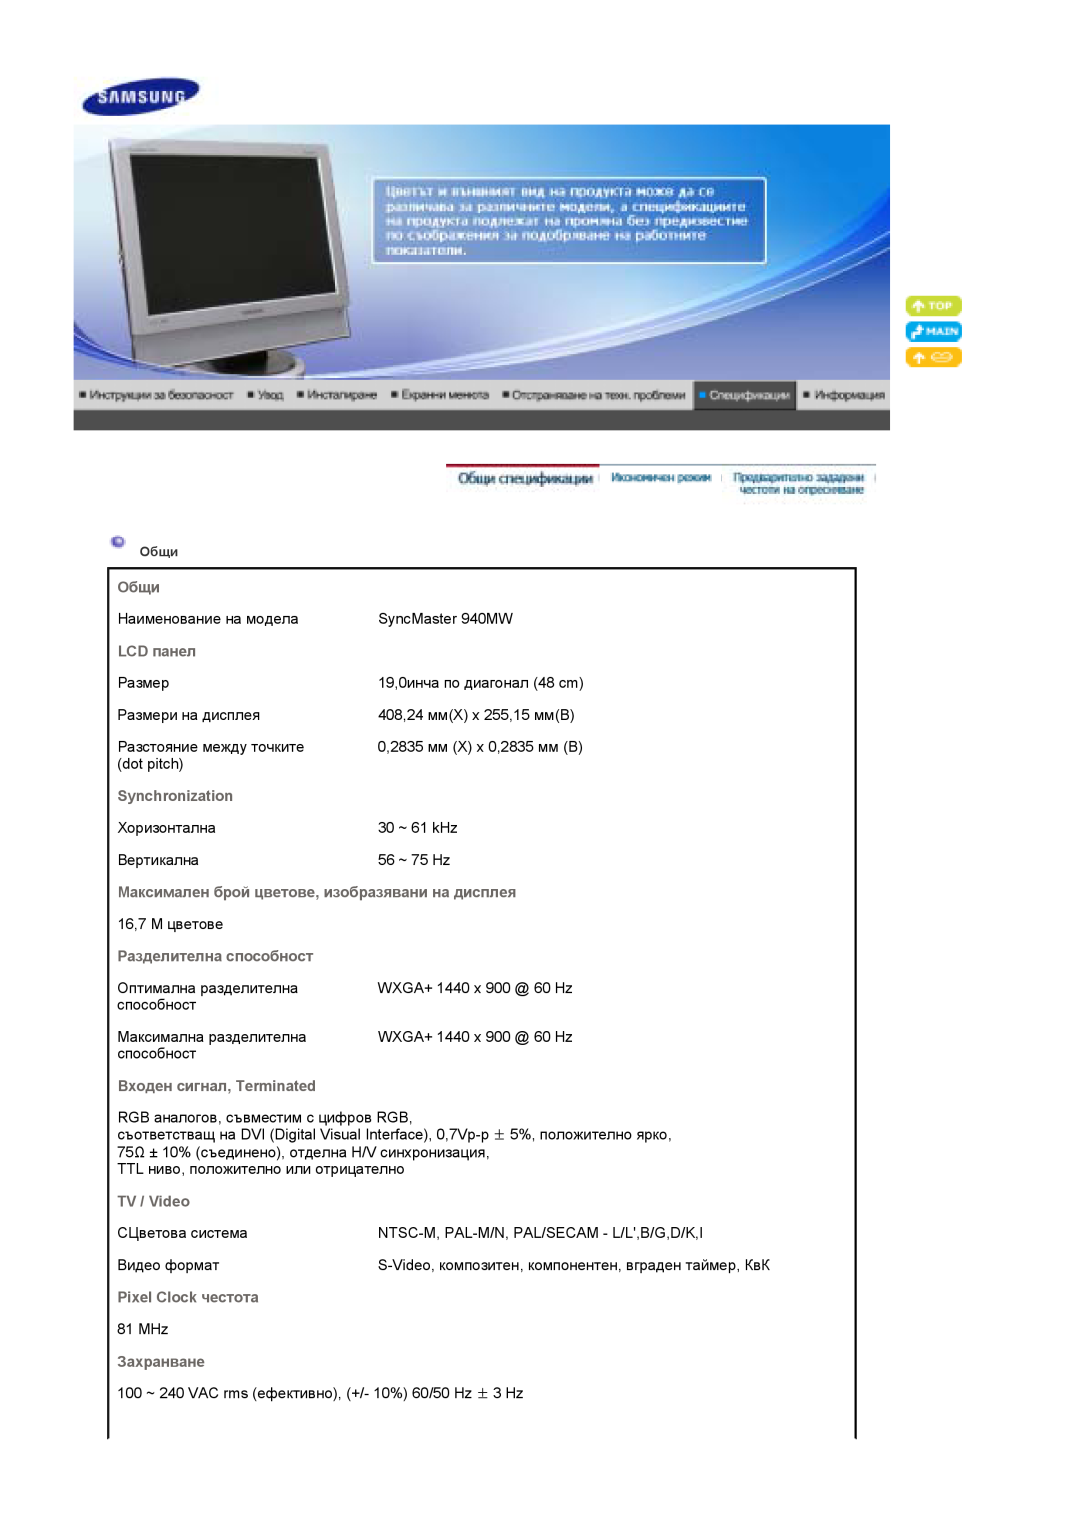 Samsung LS19DOCSS/EDC manual Общи, LCD панел, Synchronization, Максимален брой цветове, изобразявани на дисплея, TV / Video 